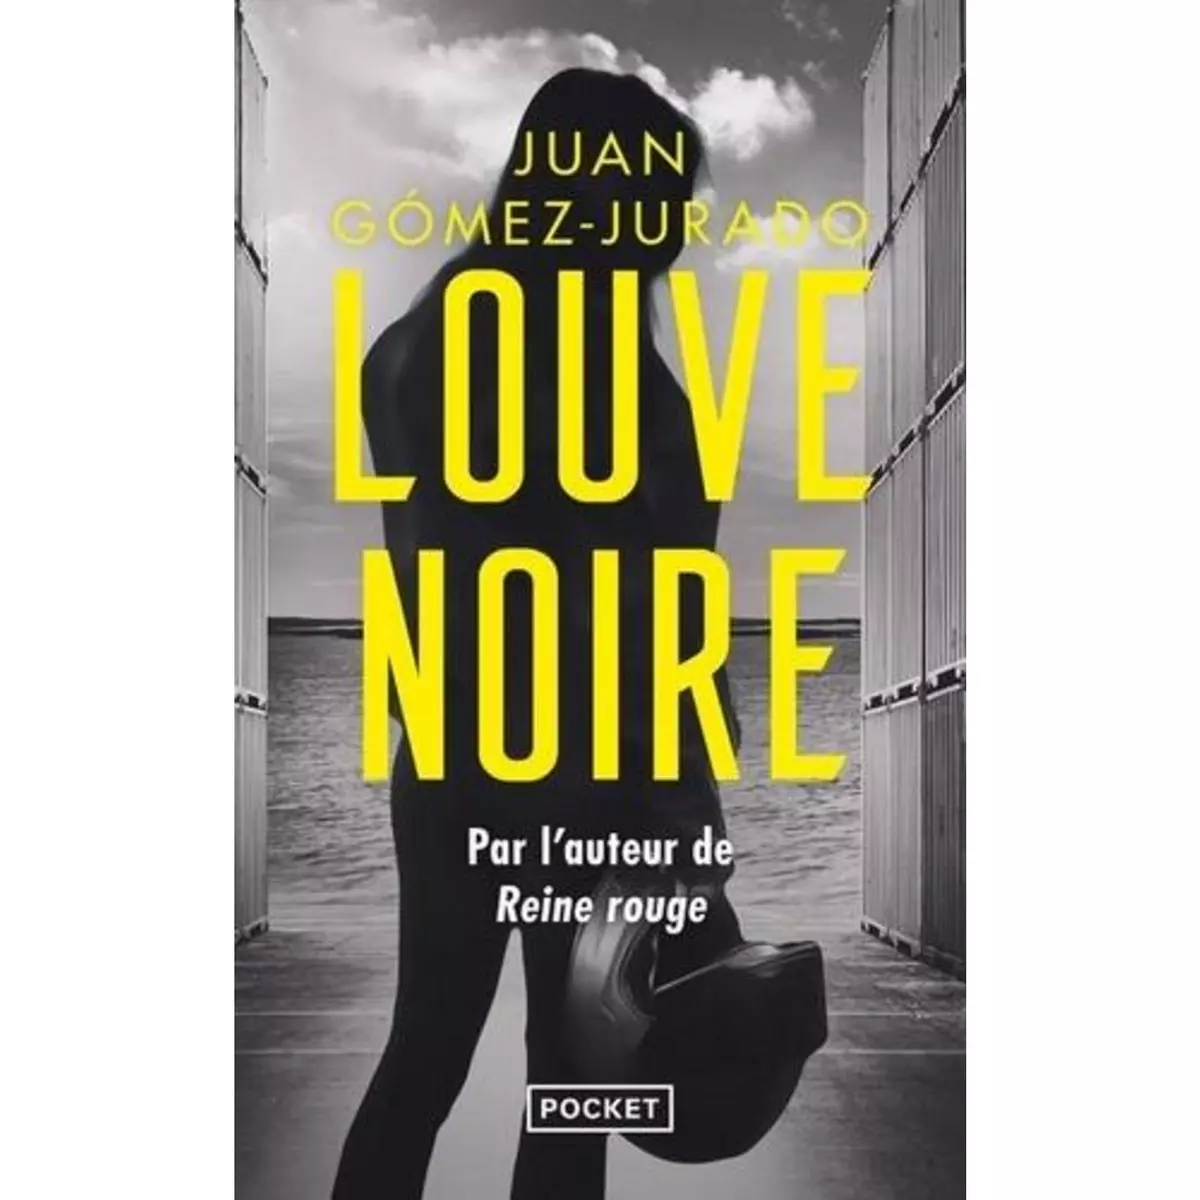  LOUVE NOIRE, Gómez-Jurado Juan